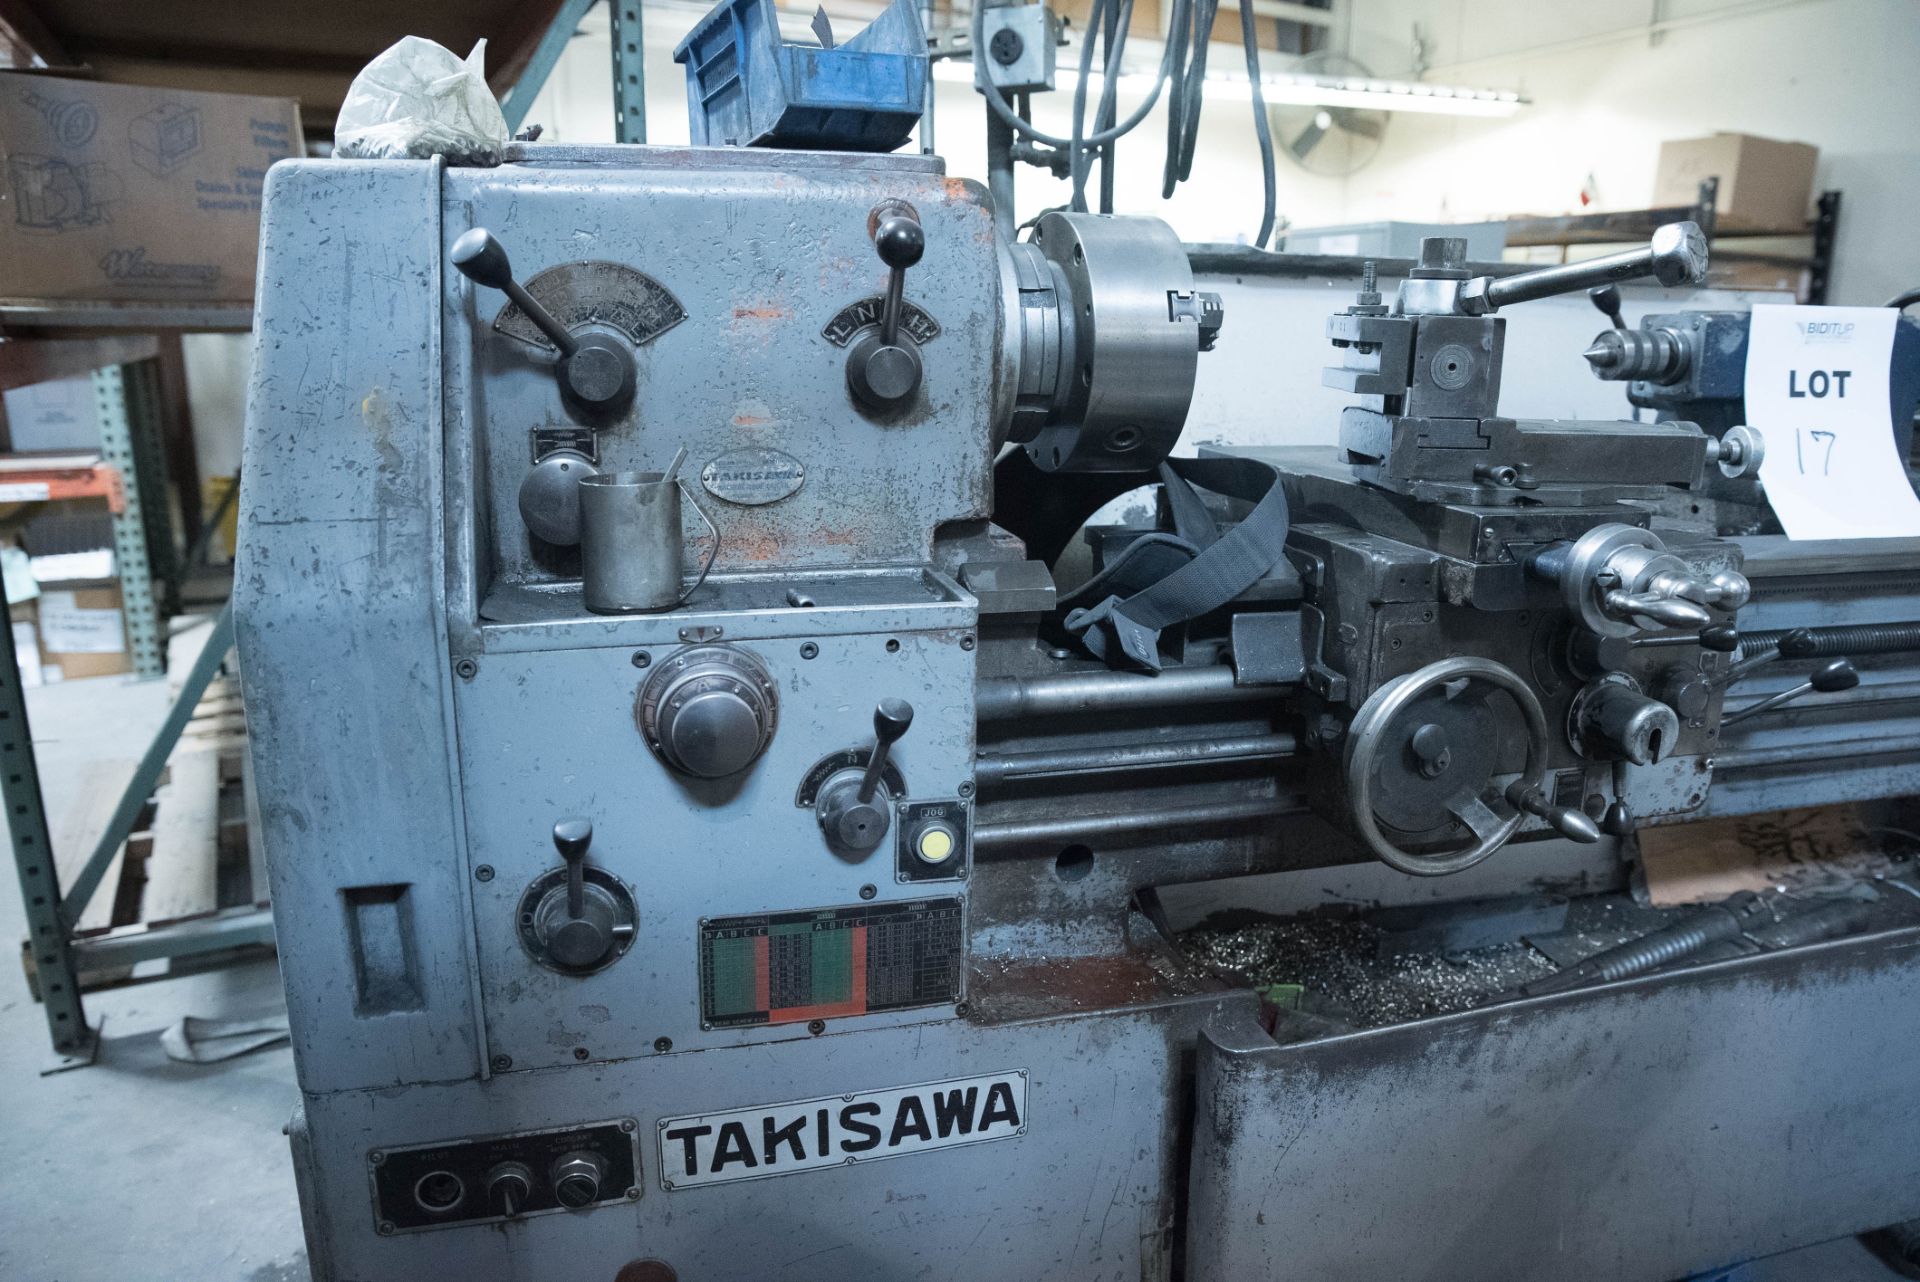 Takisawa Mdl: LE-1500 Horizontal Engine Lathe w/ Variable Speeds, S/N: 9048 - Image 2 of 3